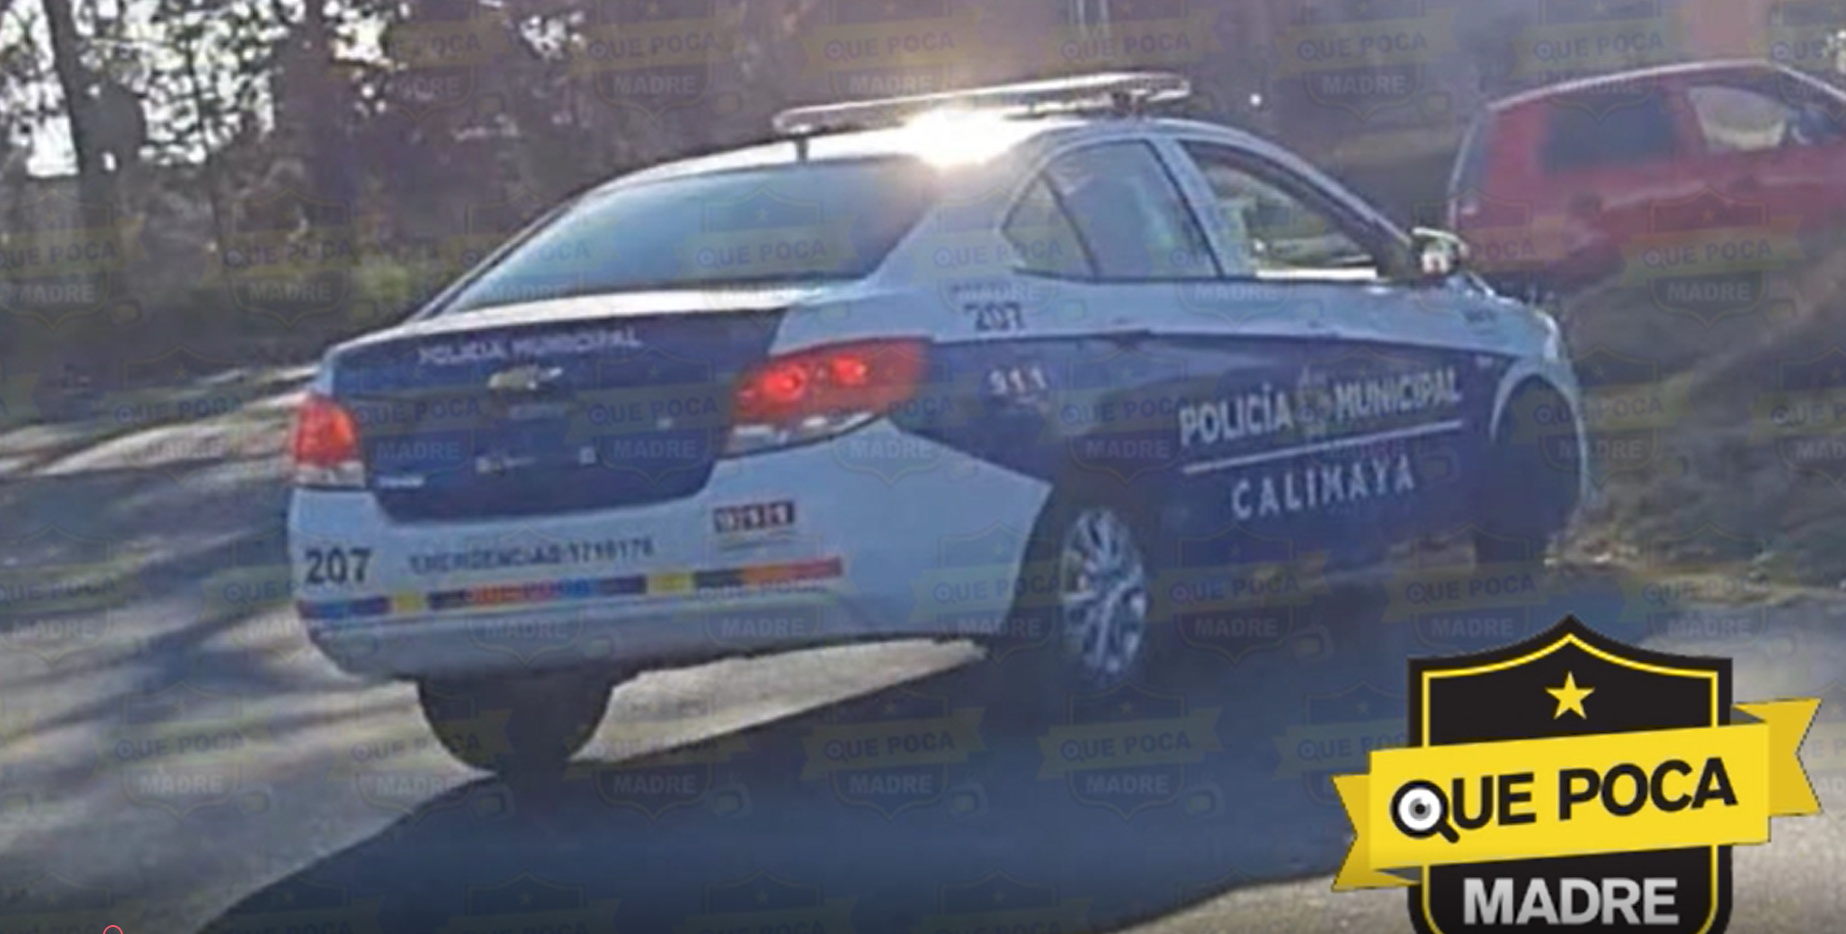 #Calimaya: Policía municipal intimida a conductor en la Toluca – Tenango.